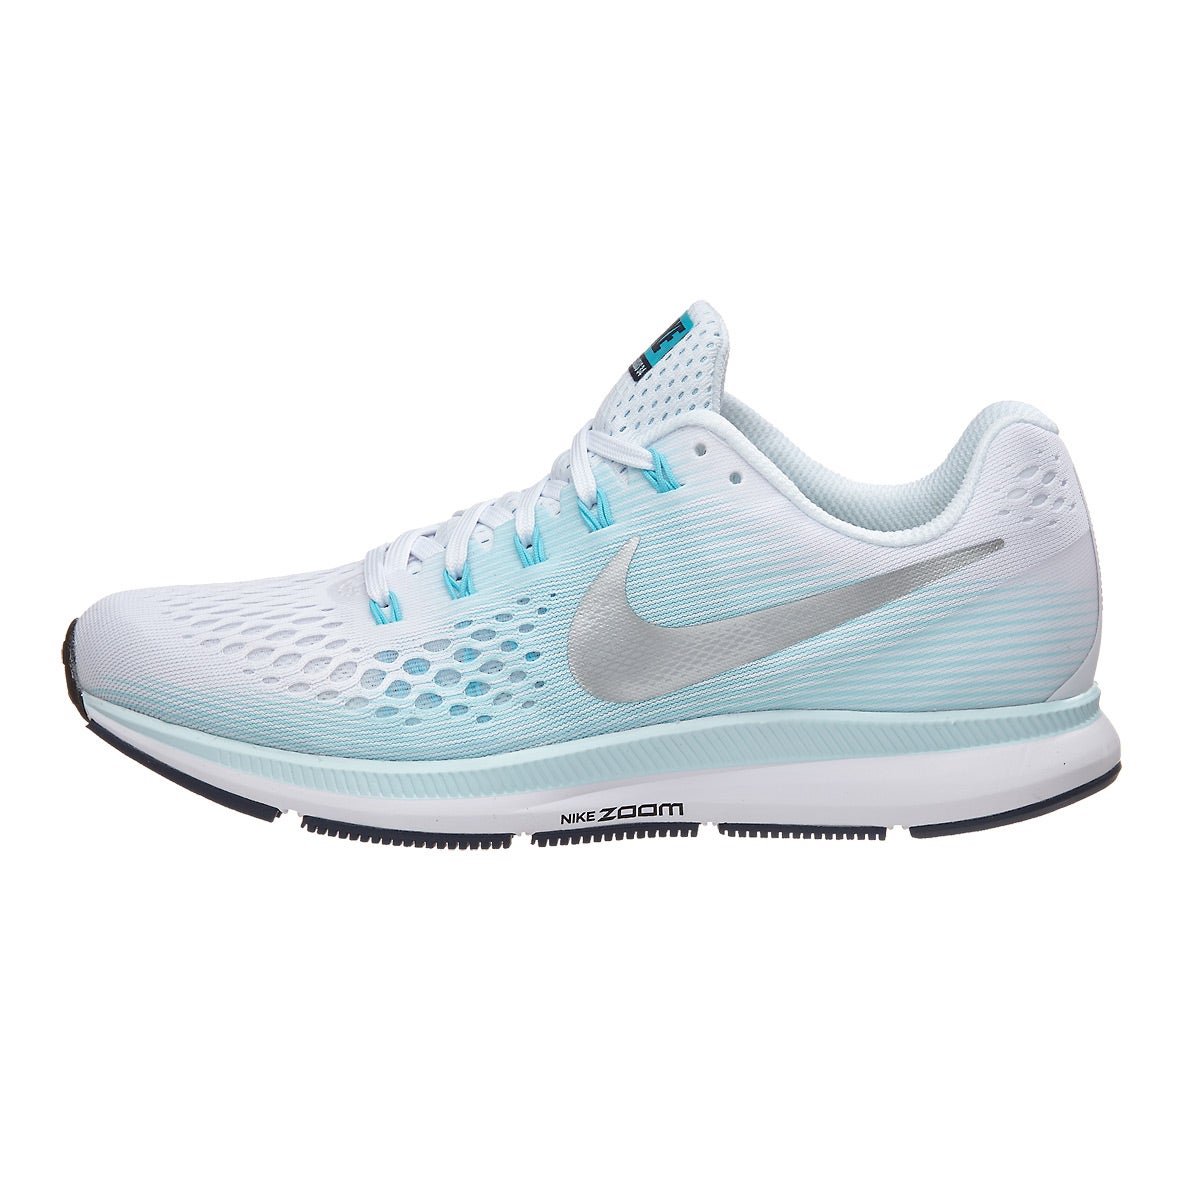 Nike Zoom Pegasus 34 Women's Shoes White/Silver/Blue 360° View ...